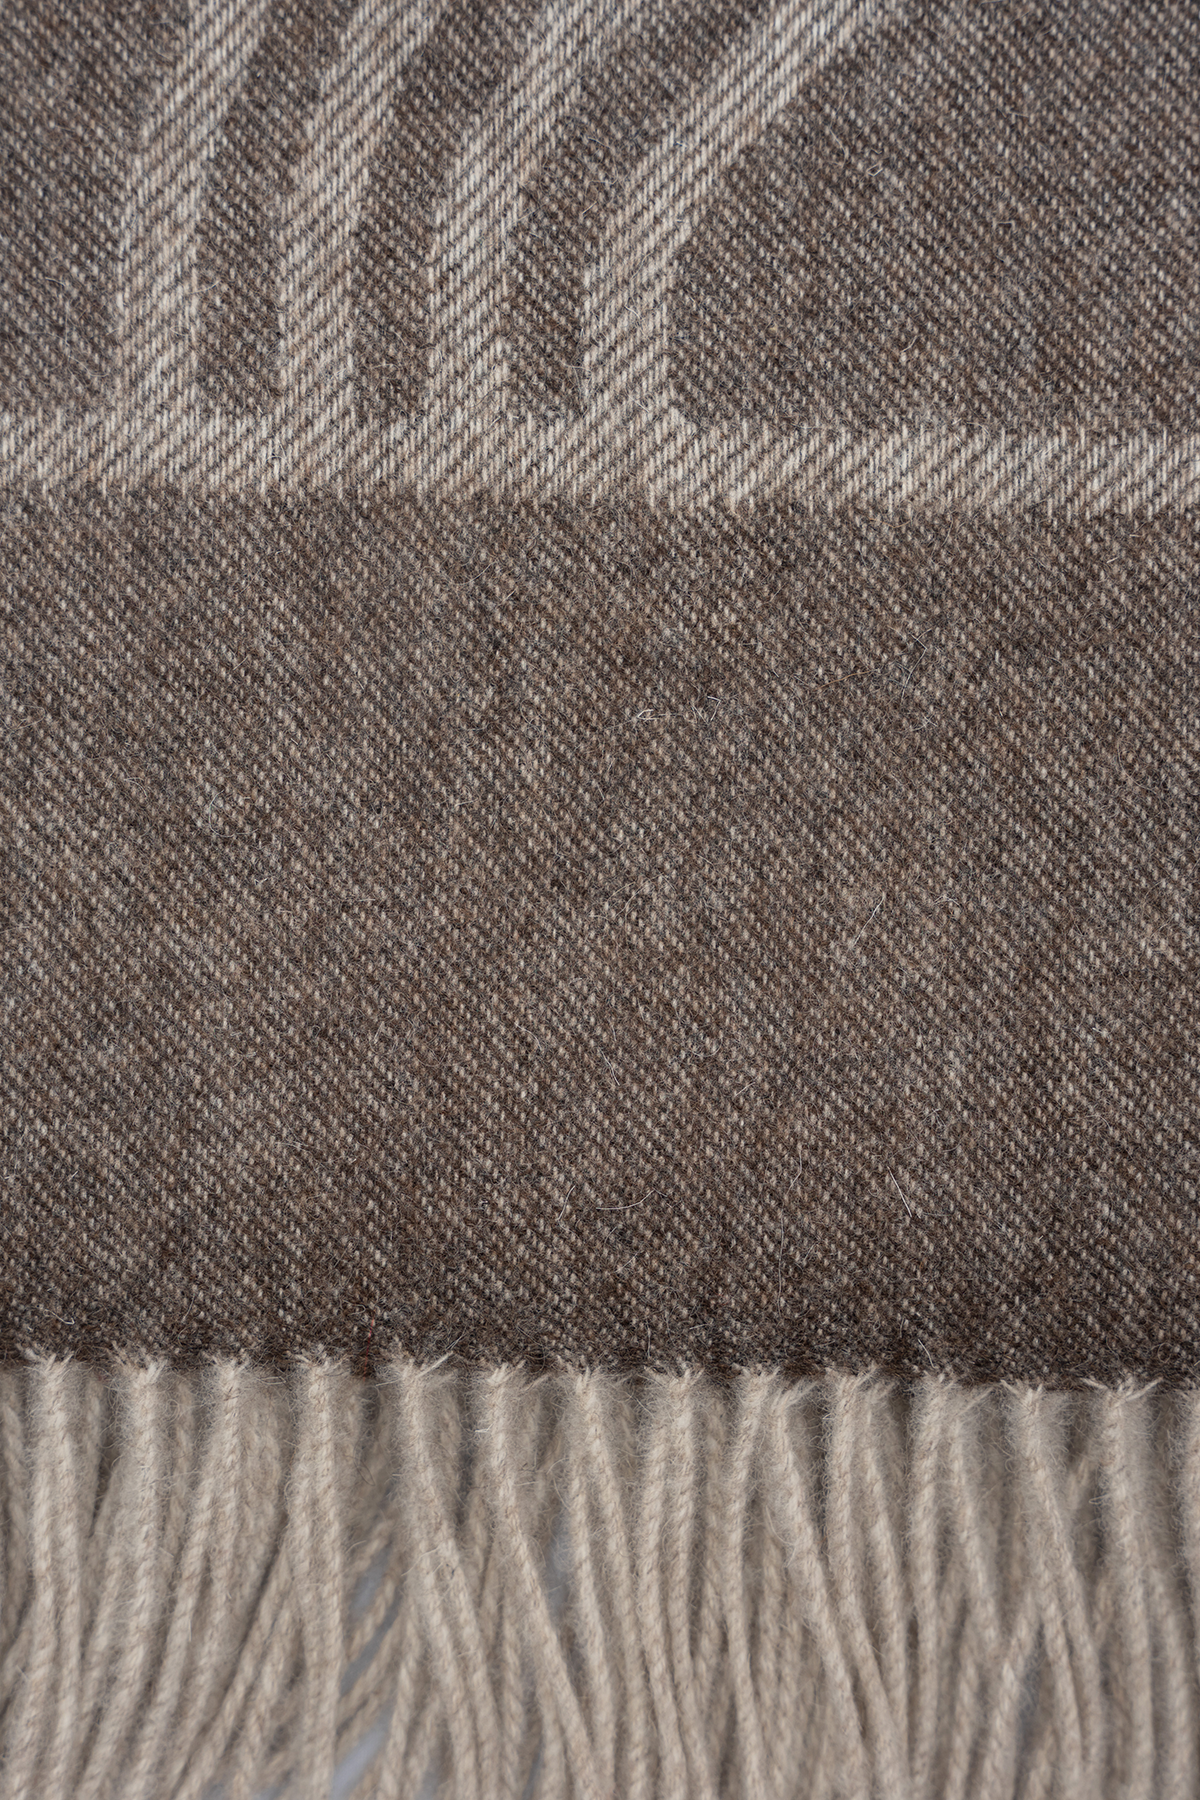 Brown Patterned Wool Throw